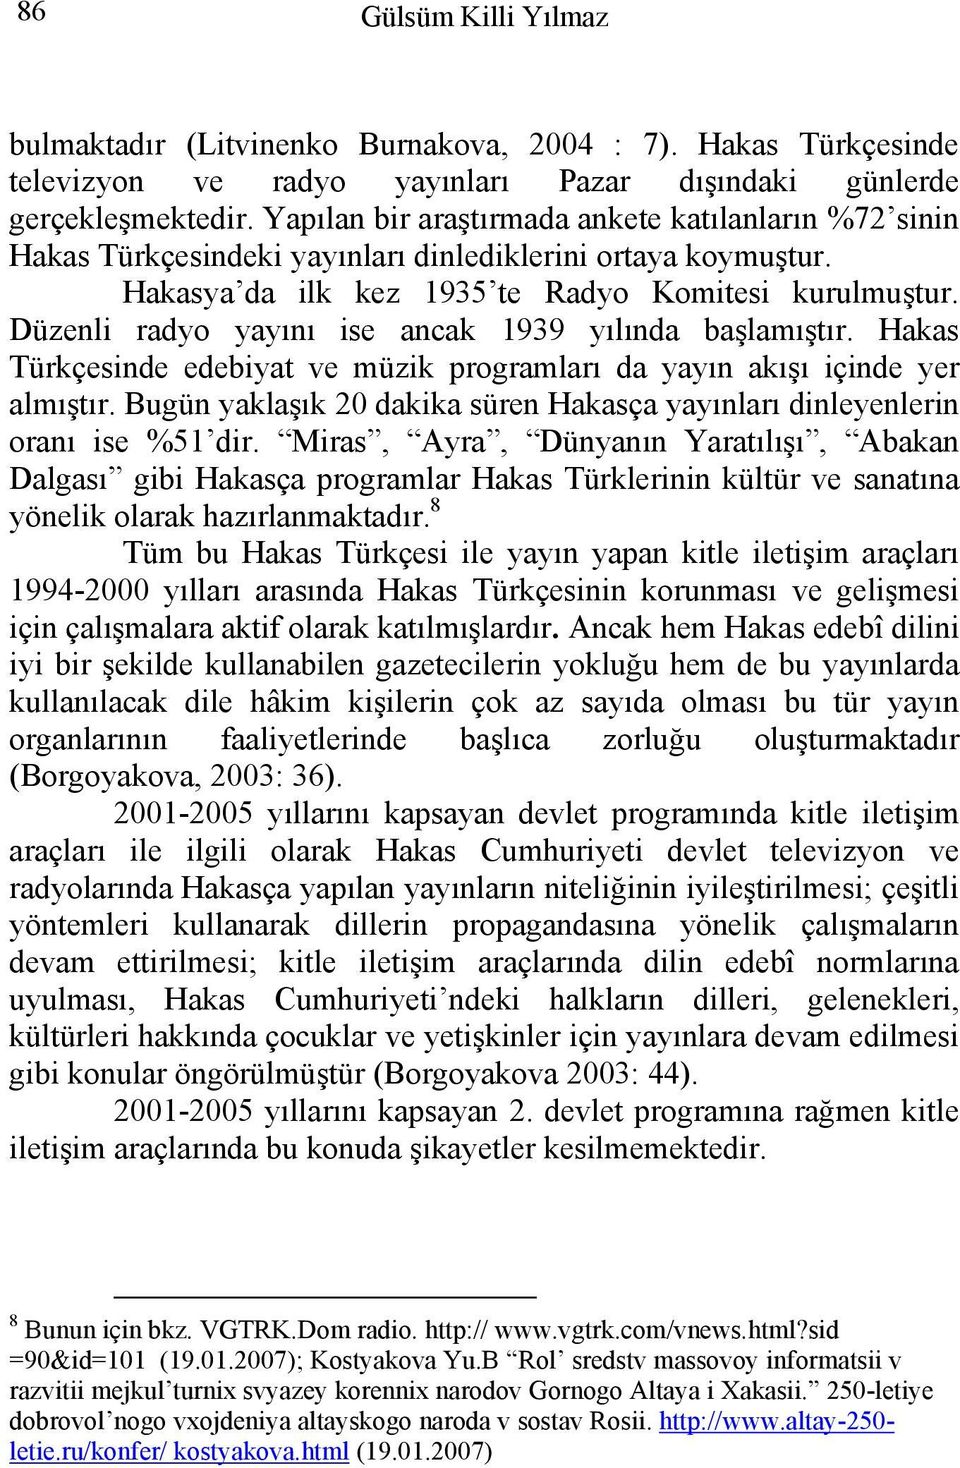 Düzenli radyo yayını ise ancak 1939 yılında başlamıştır. Hakas Türkçesinde edebiyat ve müzik programları da yayın akışı içinde yer almıştır.